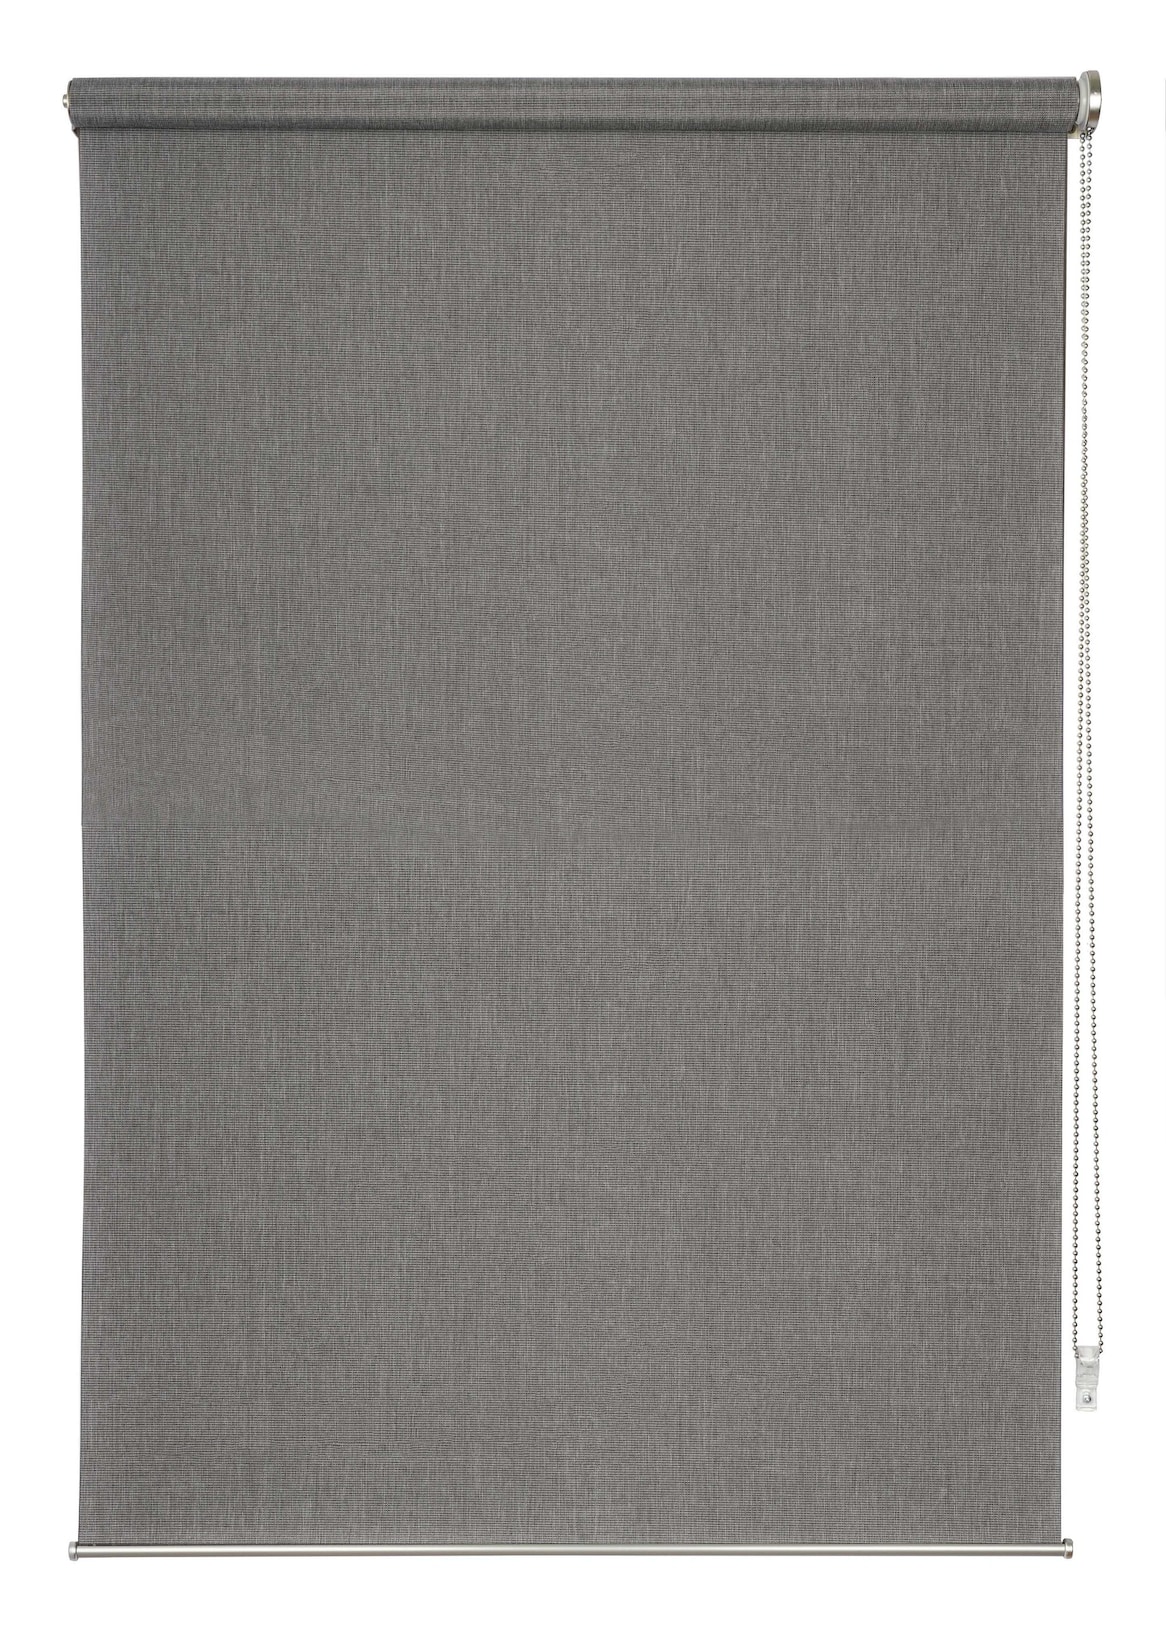 Ondeco Rollo Wand-Deckenmontage Design Cool Sichtschutz Seitenzugrollo Sonnenschutz Farbe: Grau, Größe: 180x160 cm